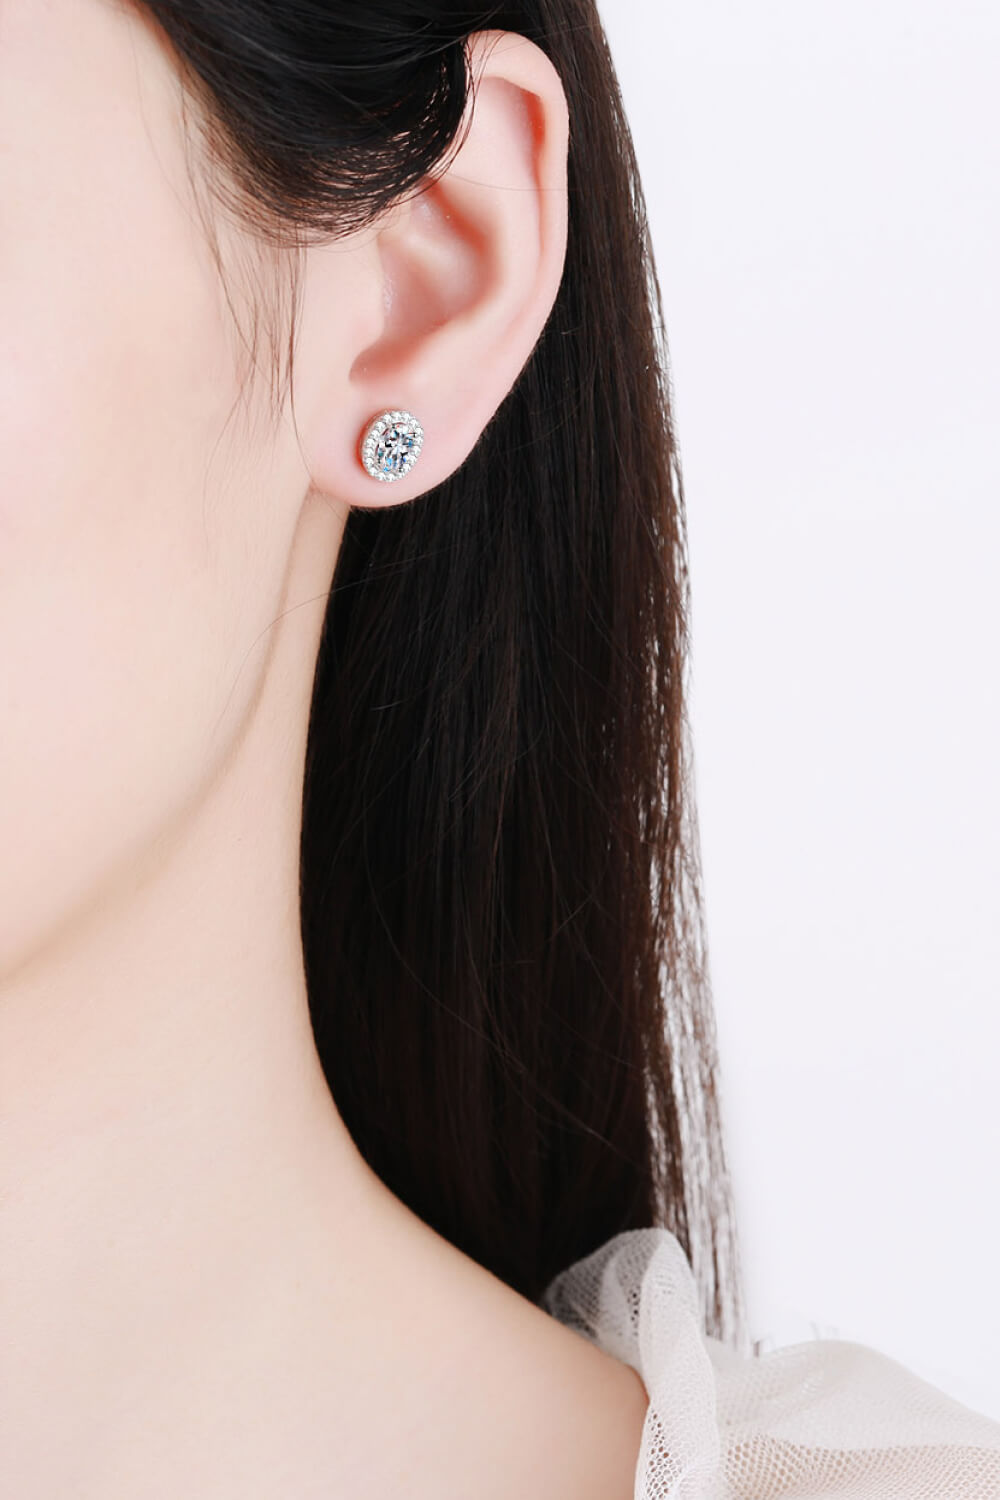 1 Carat Moissanite Stud Earrings